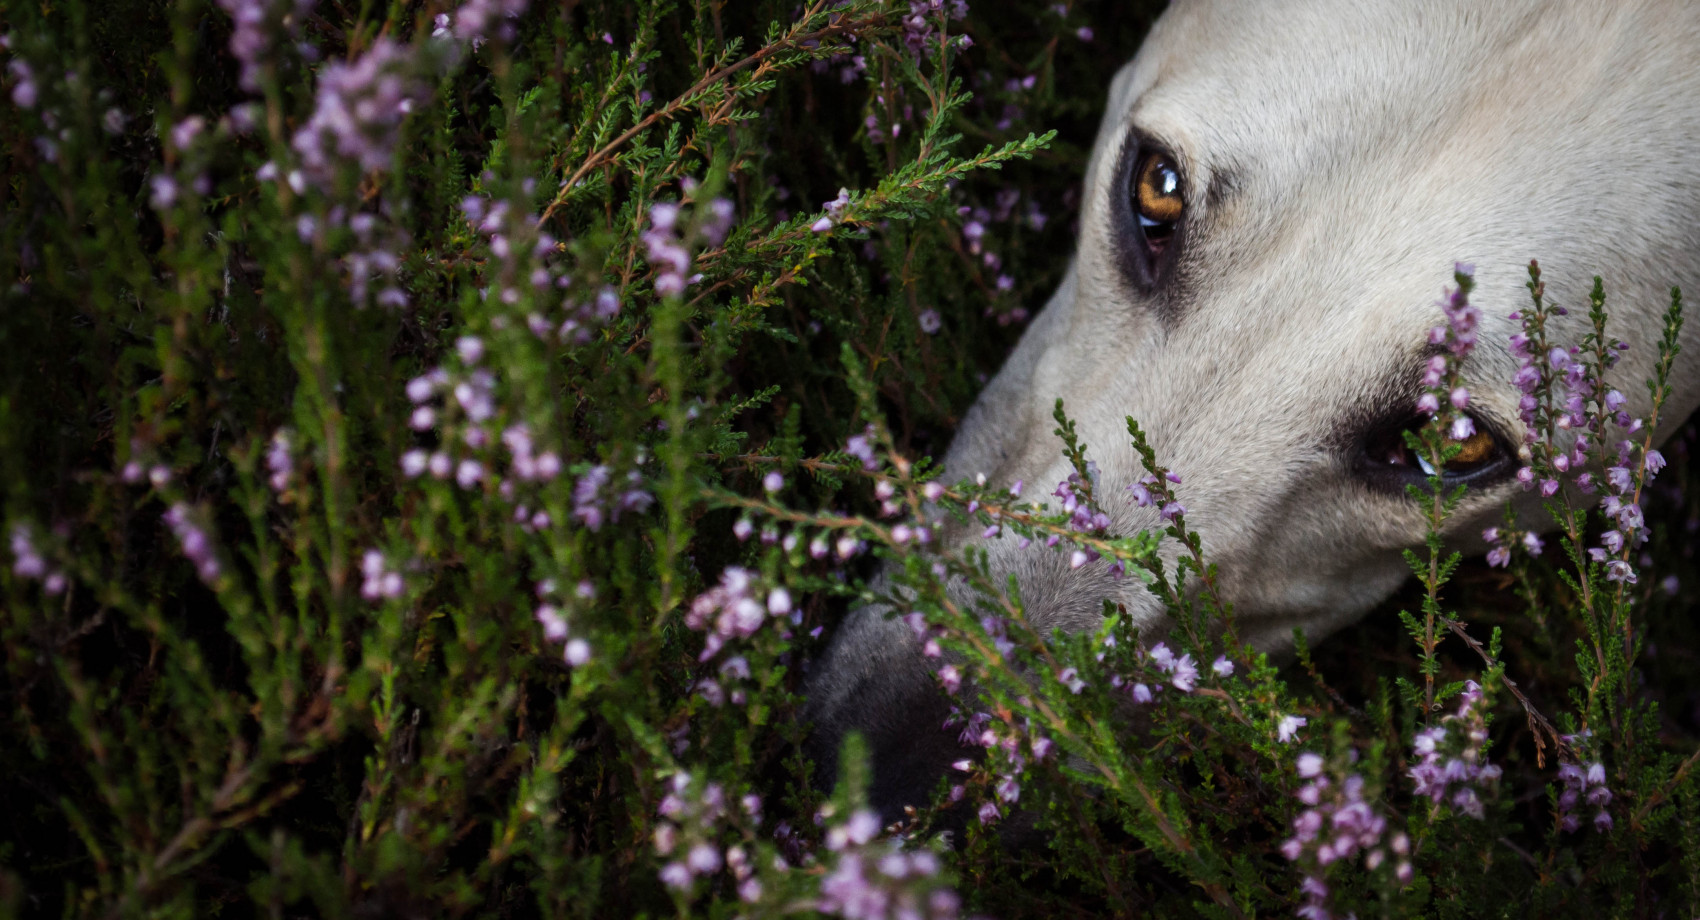 fotograf lodz natalia-milcarz portfolio zdjecia zwierzat sesja zdjeciowa konie psy koty